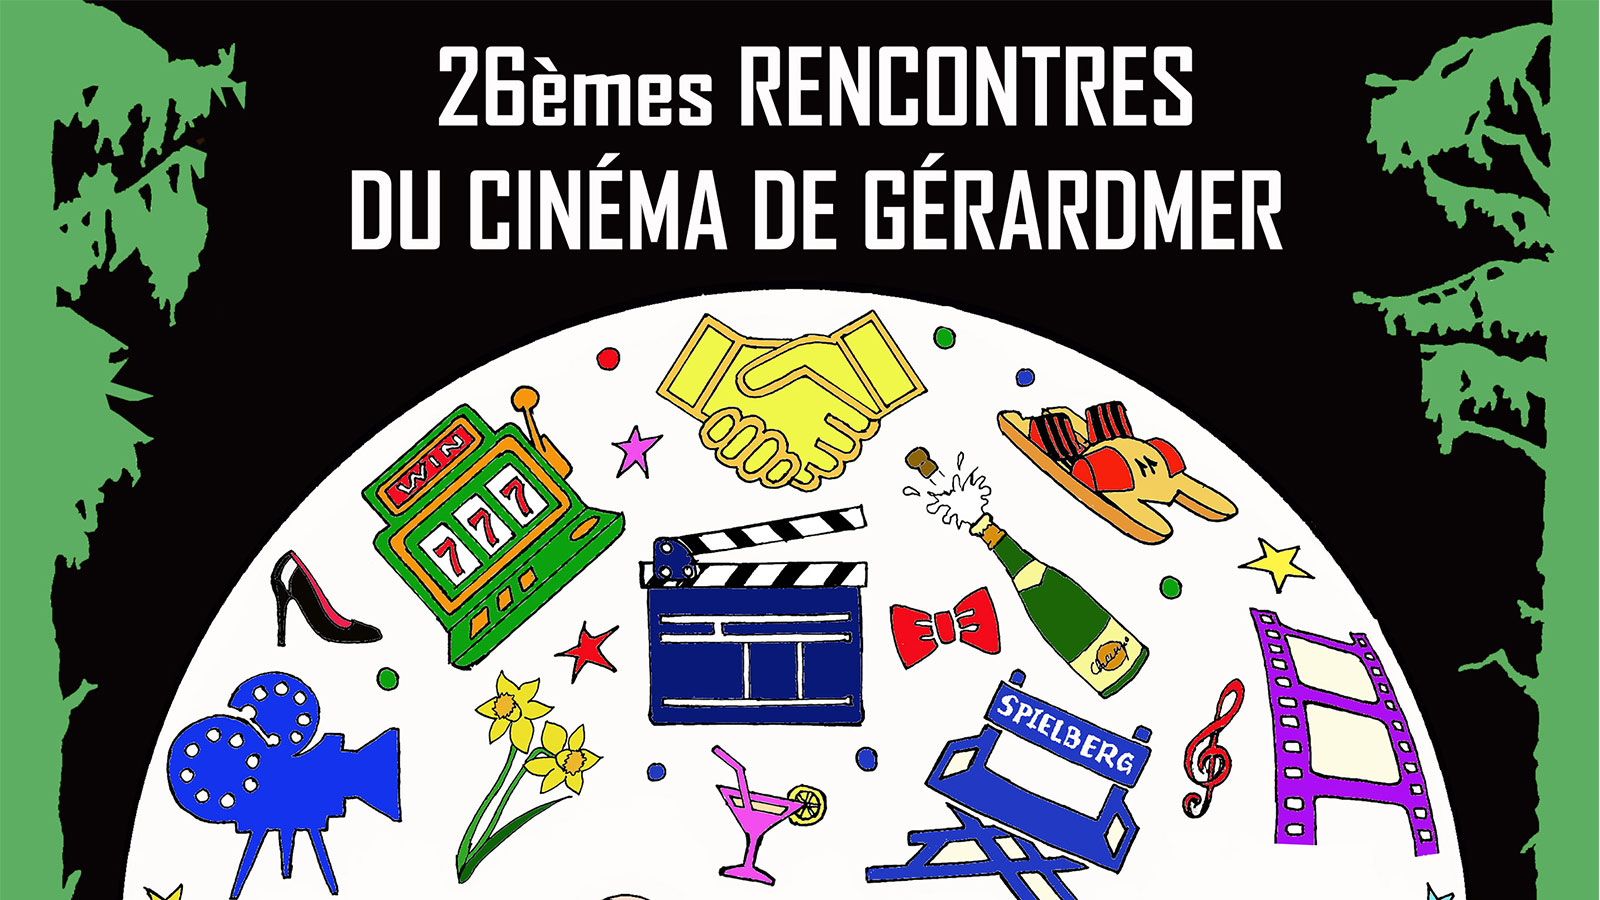 26èmes Rencontres du Cinéma de Gérardmer